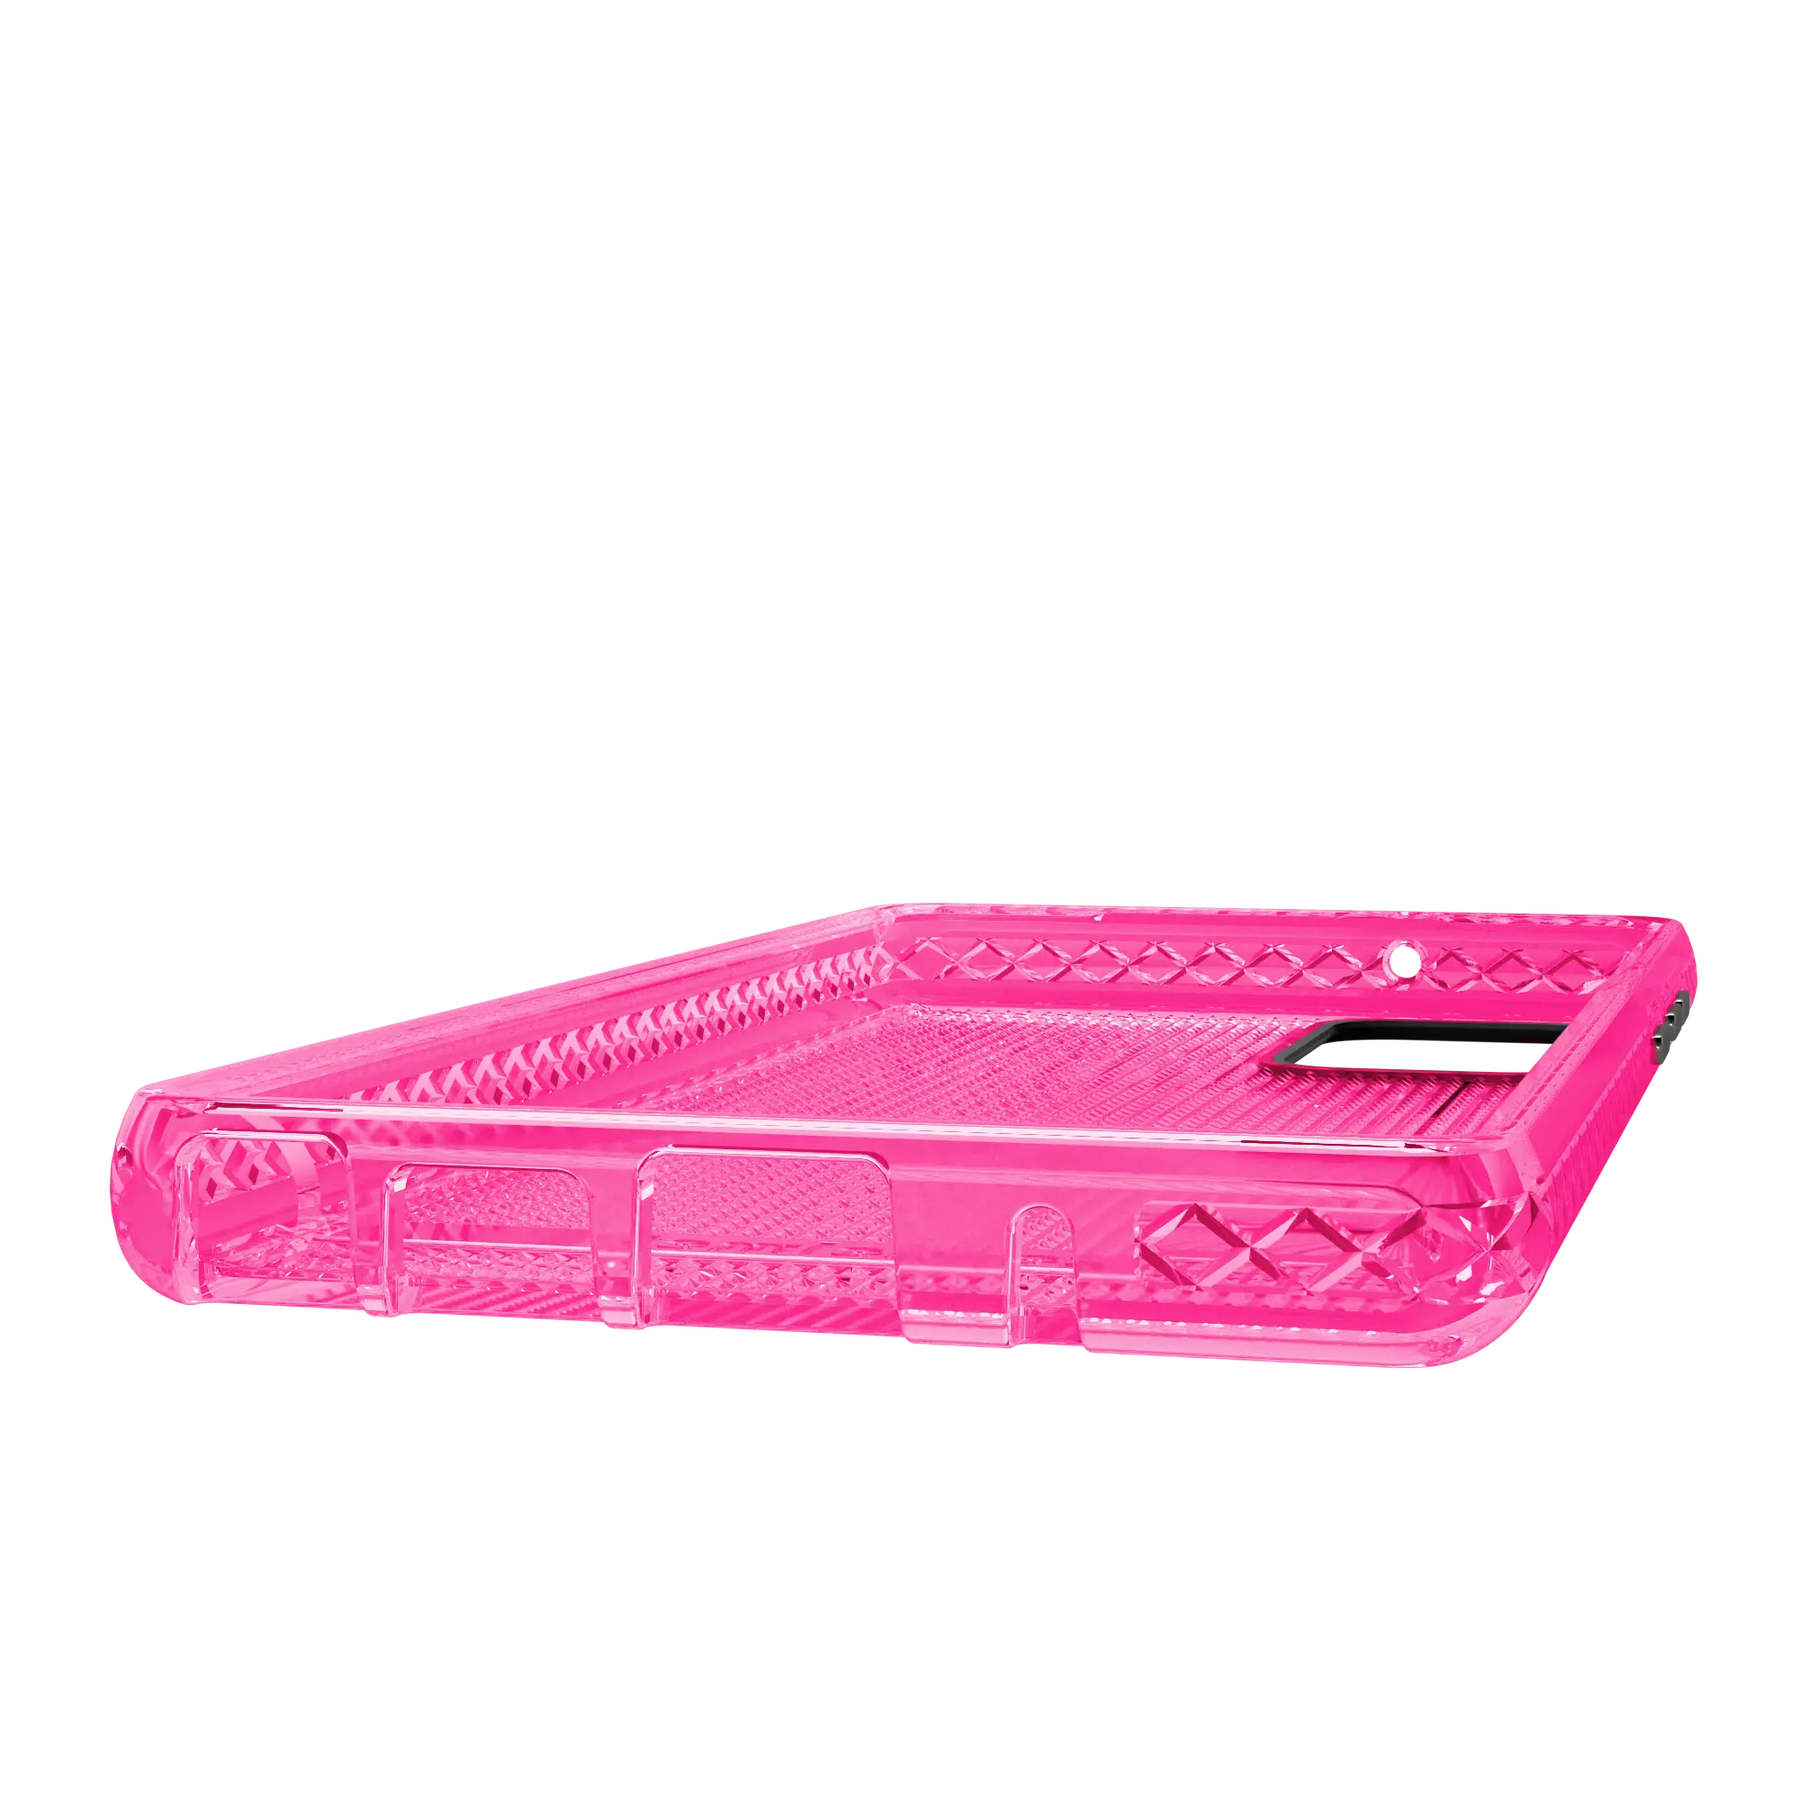 Altitude X Series for Samsung Galaxy Note 20 5G  - Pink - Case -  - cellhelmet